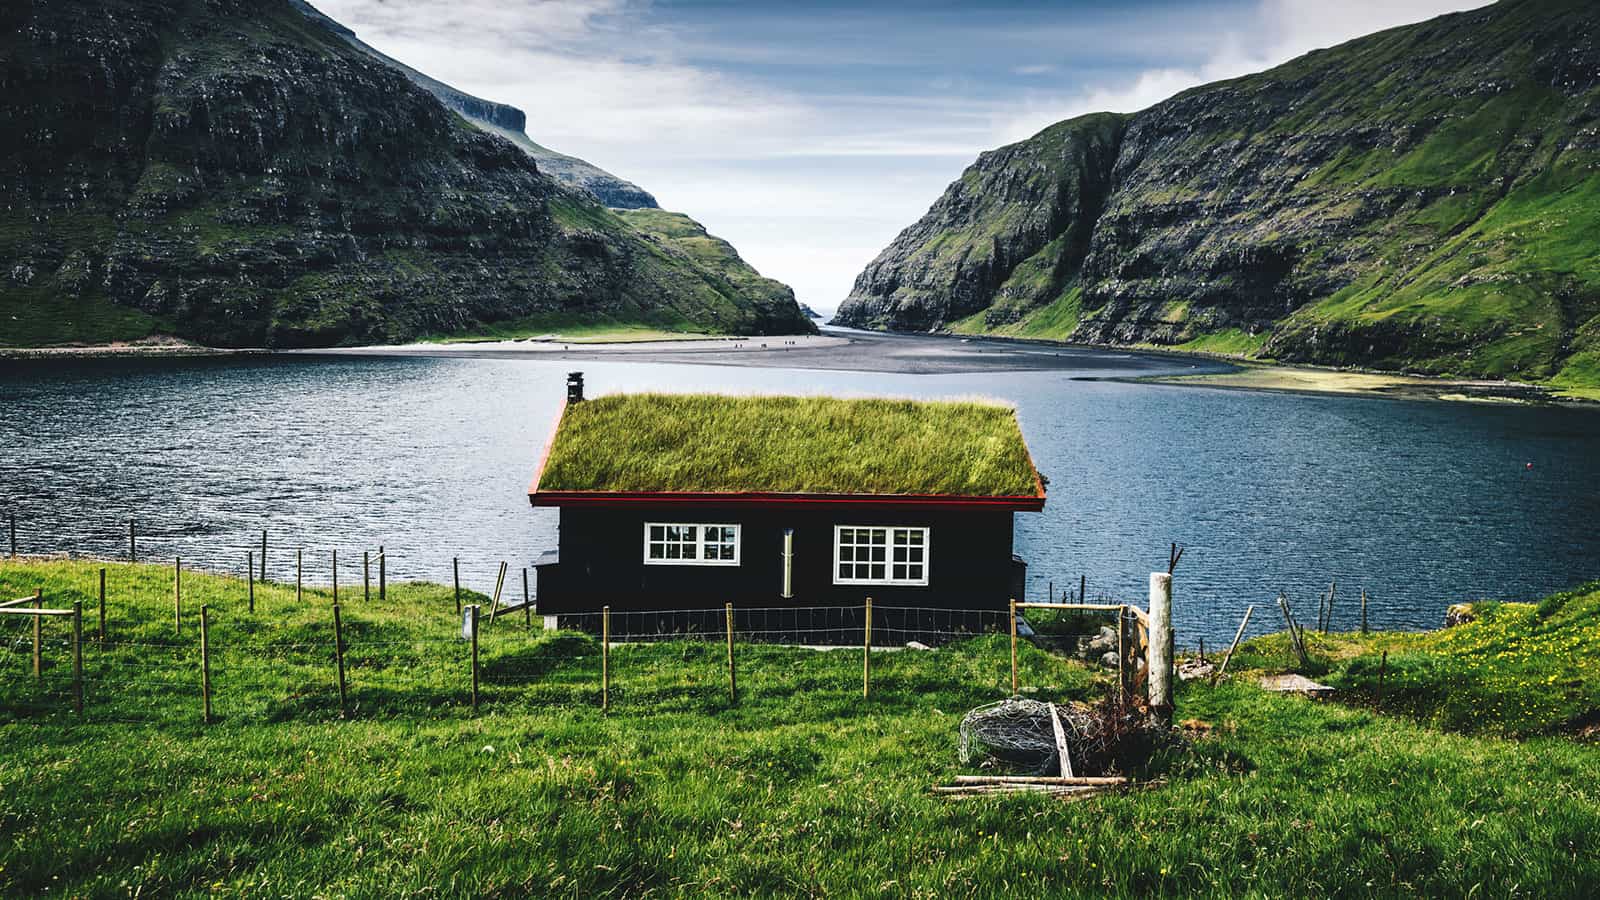 Danimarka’nın Faroe Adaları Hakkında Şaşırtıcı Gerçekler